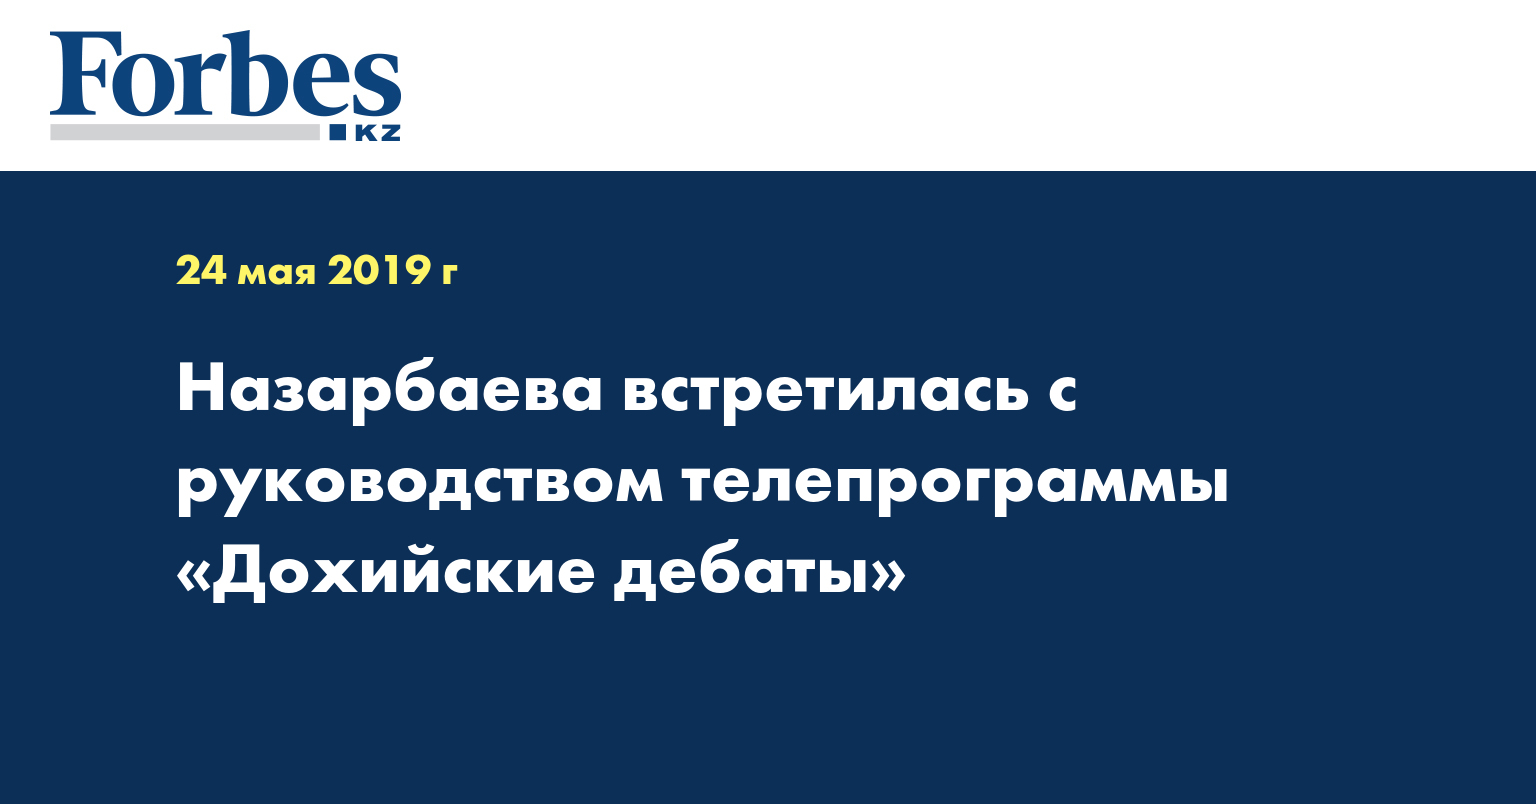 Назарбаева встретилась с руководством телепрограммы «Дохийские дебаты»